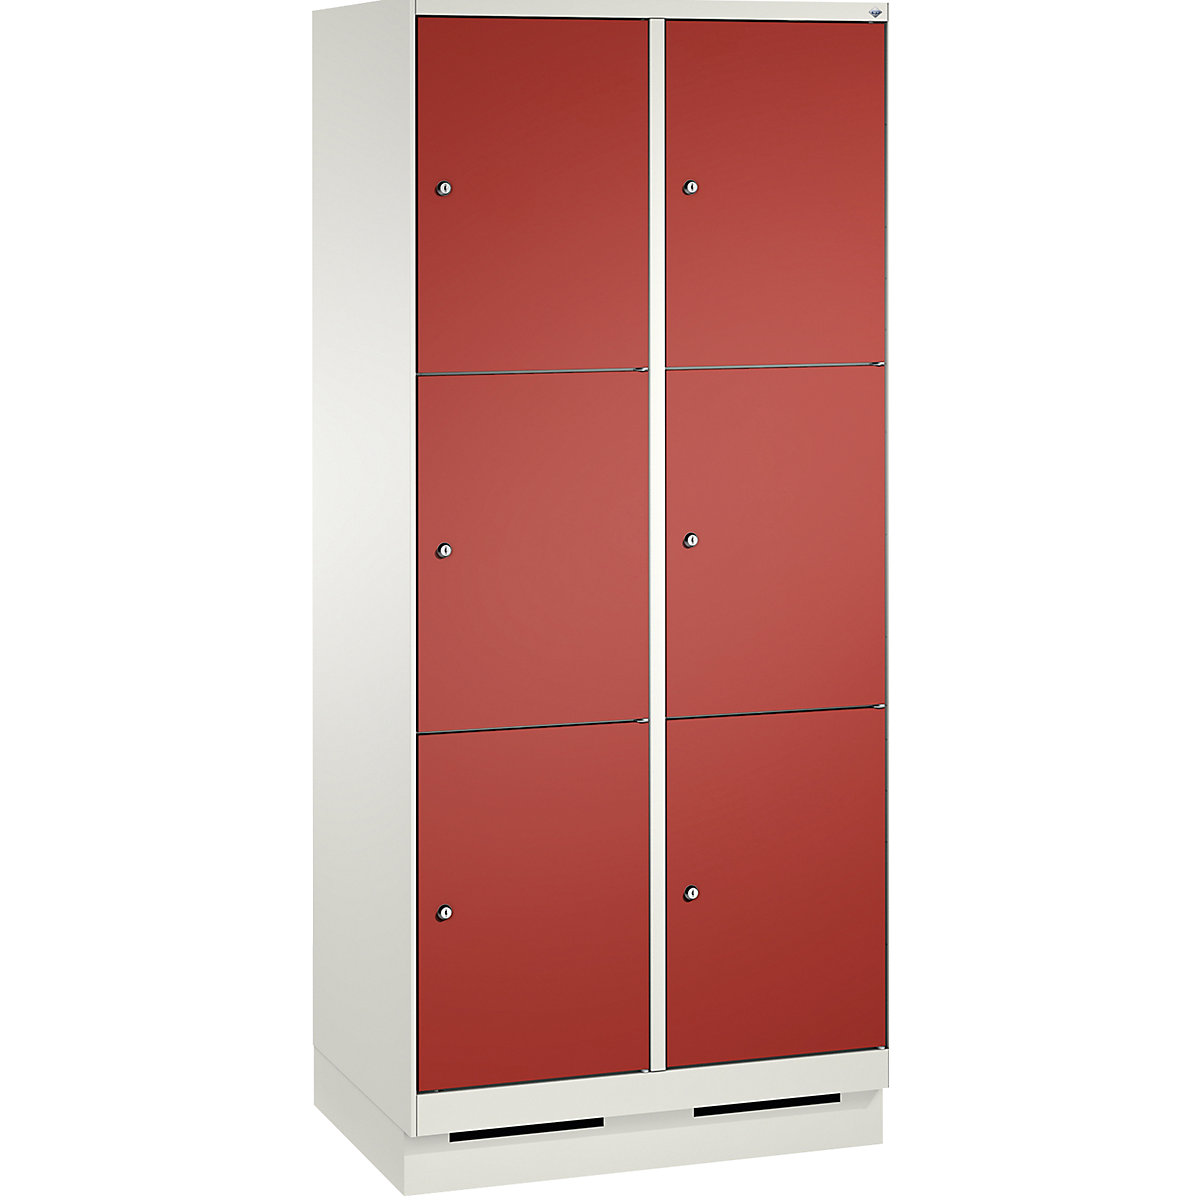 Armoire à casiers sur socle EVOLO – C+P, 2 compartiments, 3 casiers chacun, largeur compartiments 400 mm, blanc trafic / rouge feu-5